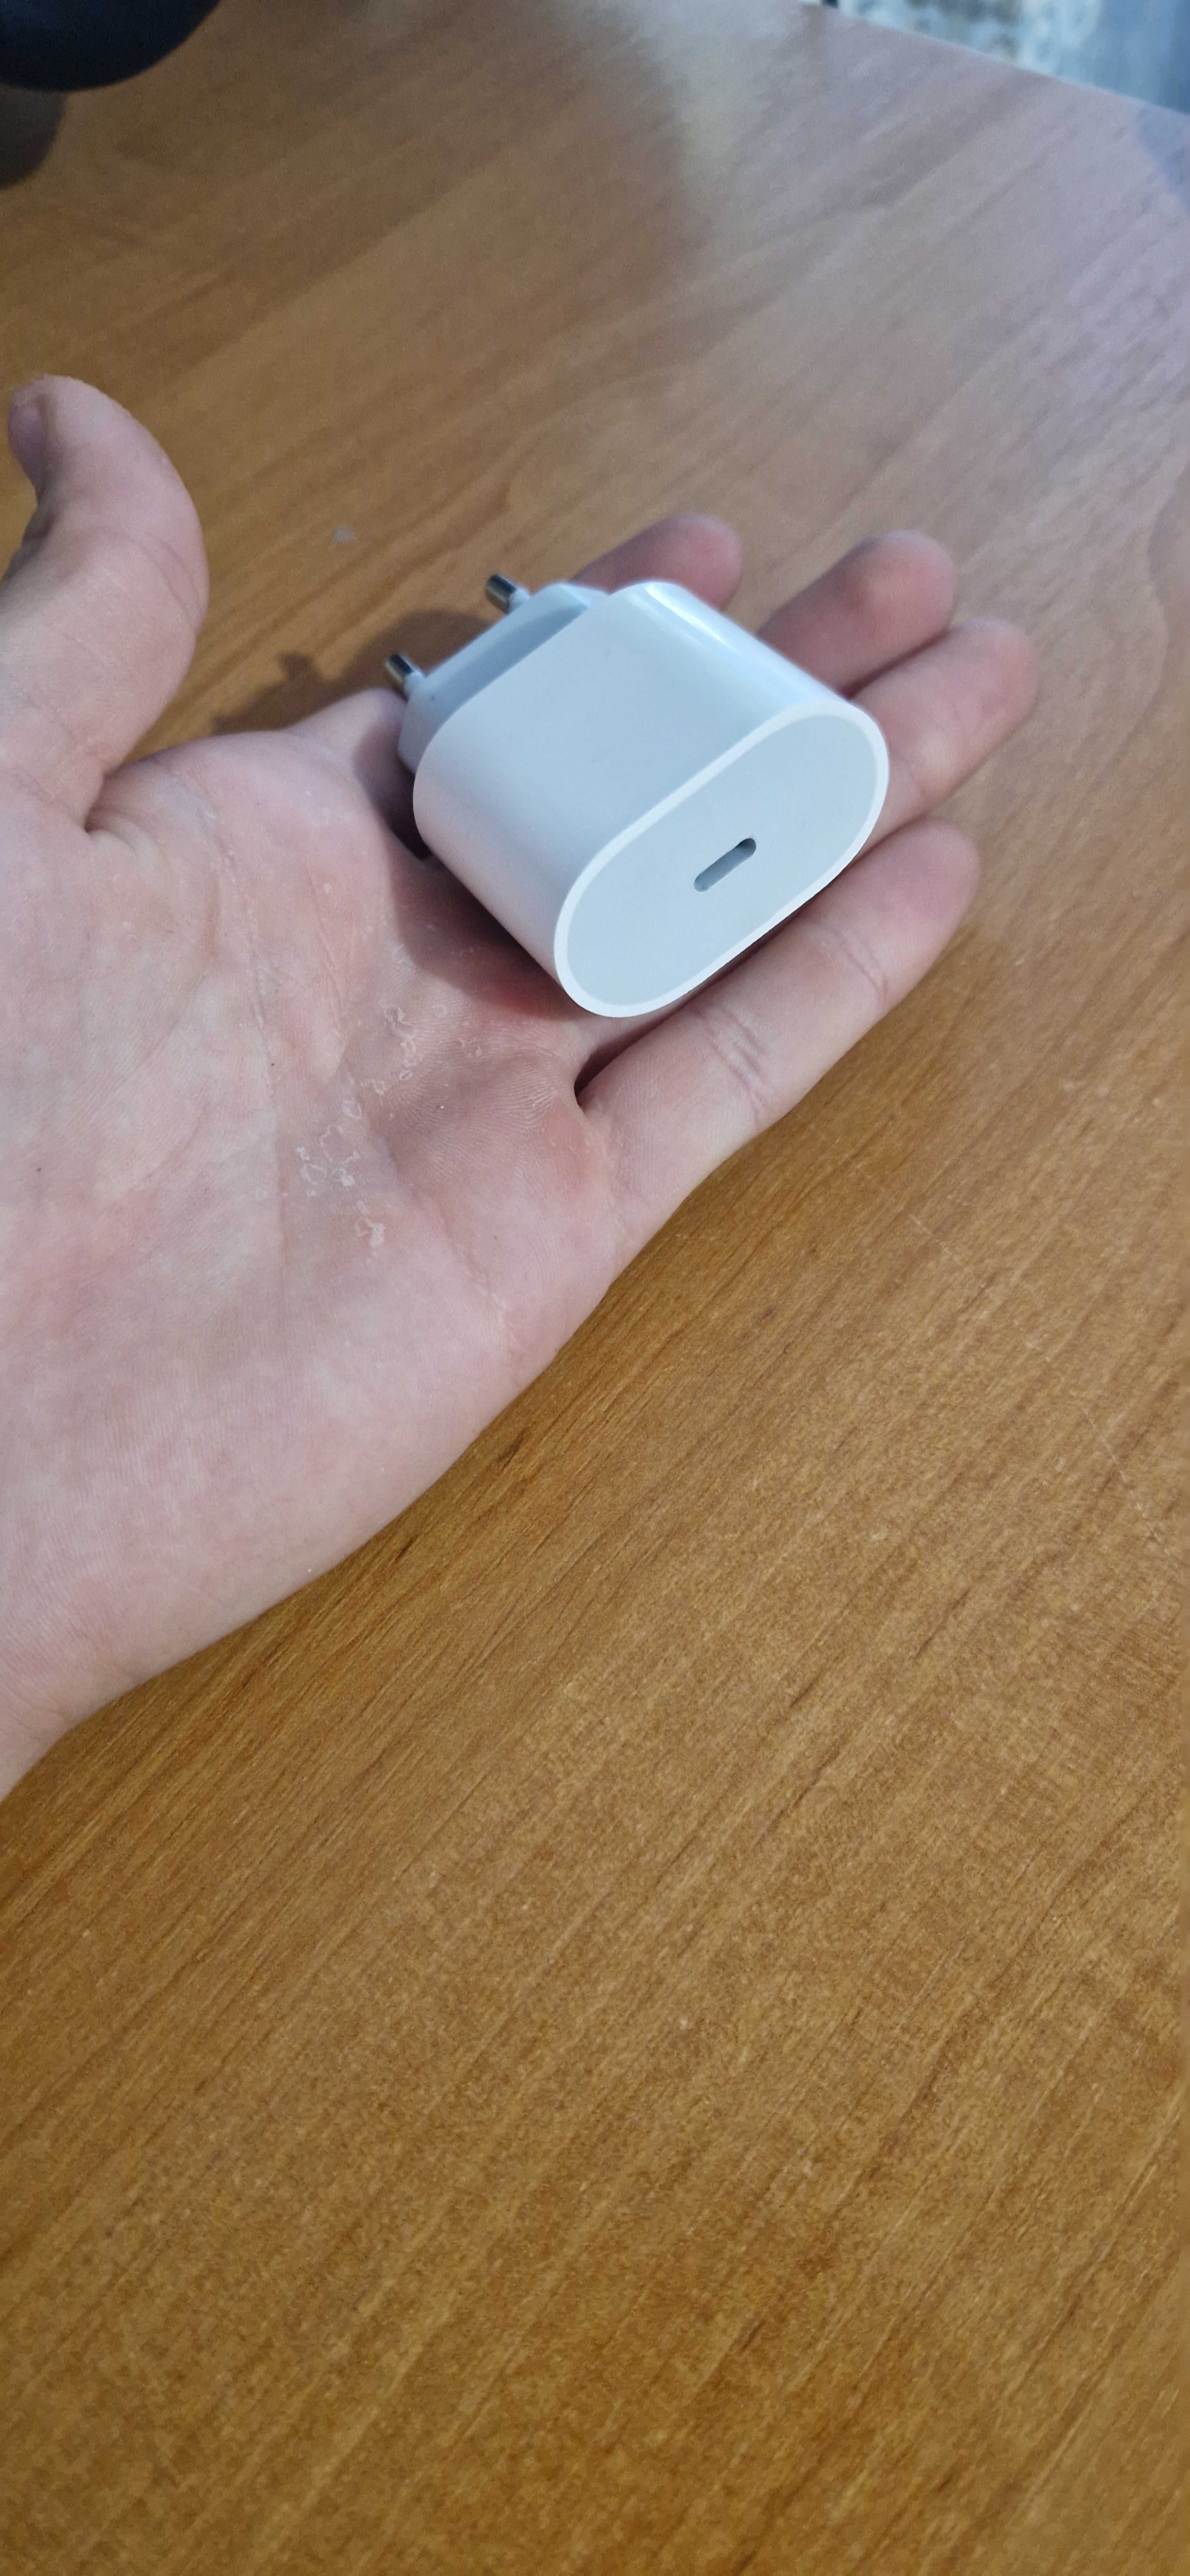 Зарядний пристрій Apple 20W USB-C Power Adapter White